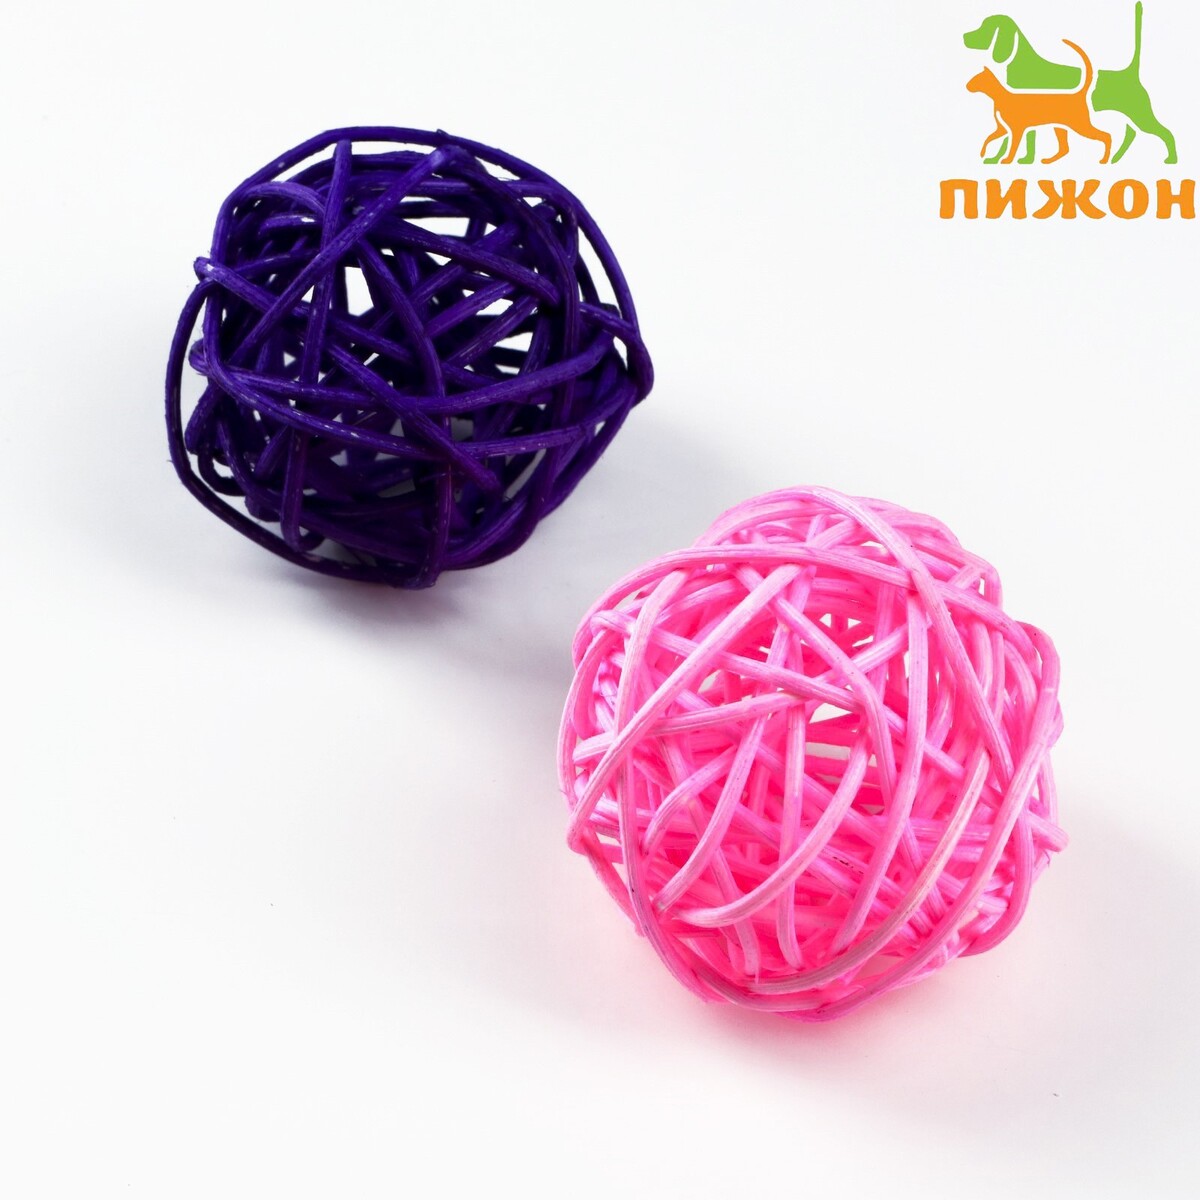 Набор из 2 плетеных шариков из лозы без бубенчиков, 5 см, фиолетовый/розовый набор из 2 плетеных шариков из лозы без бубенчиков 5 см фиолетовый розовый